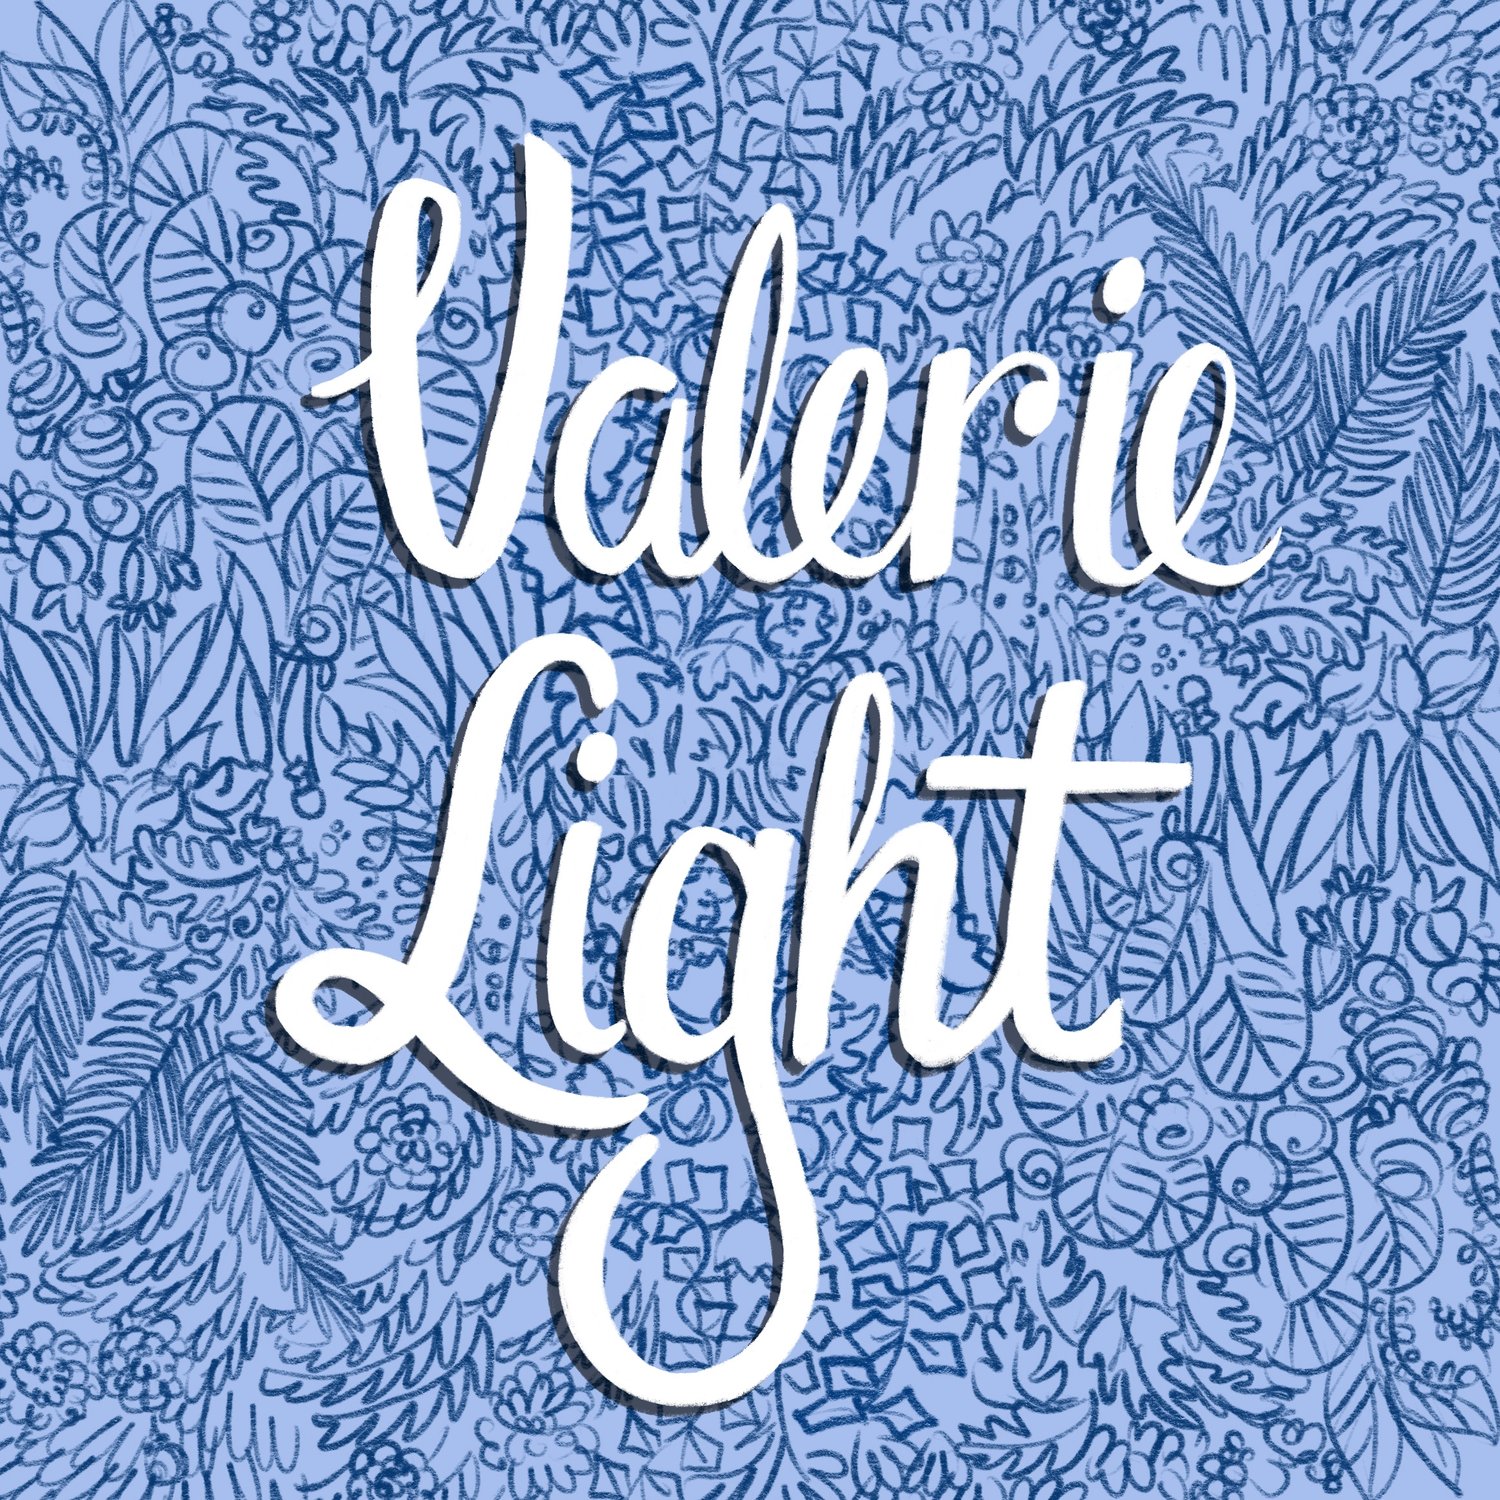 Valerie Light Illustration